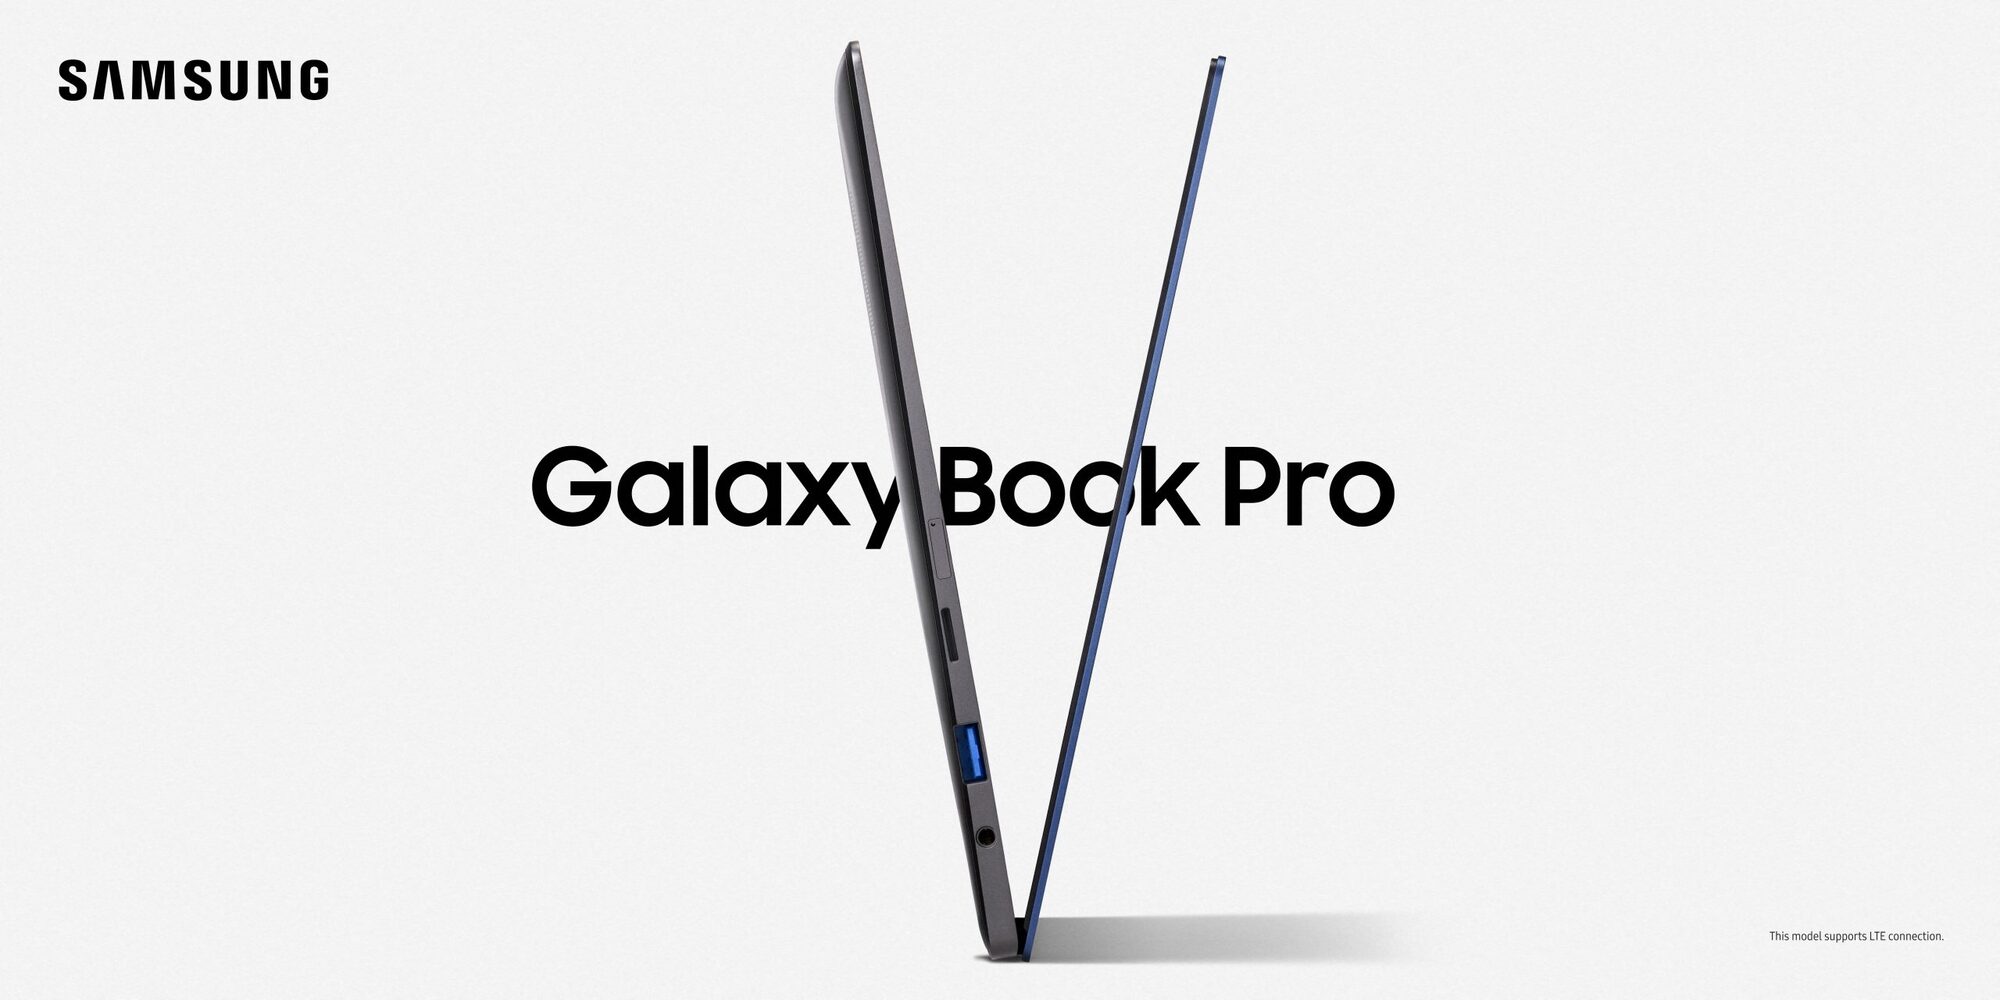 Samsung Galaxy Book 3 360 Samsung sync not logging in. Galaxy_Book_Pro_13inch_MysticBlue_LTE_3_210416092724-Copy-scaled.jpg